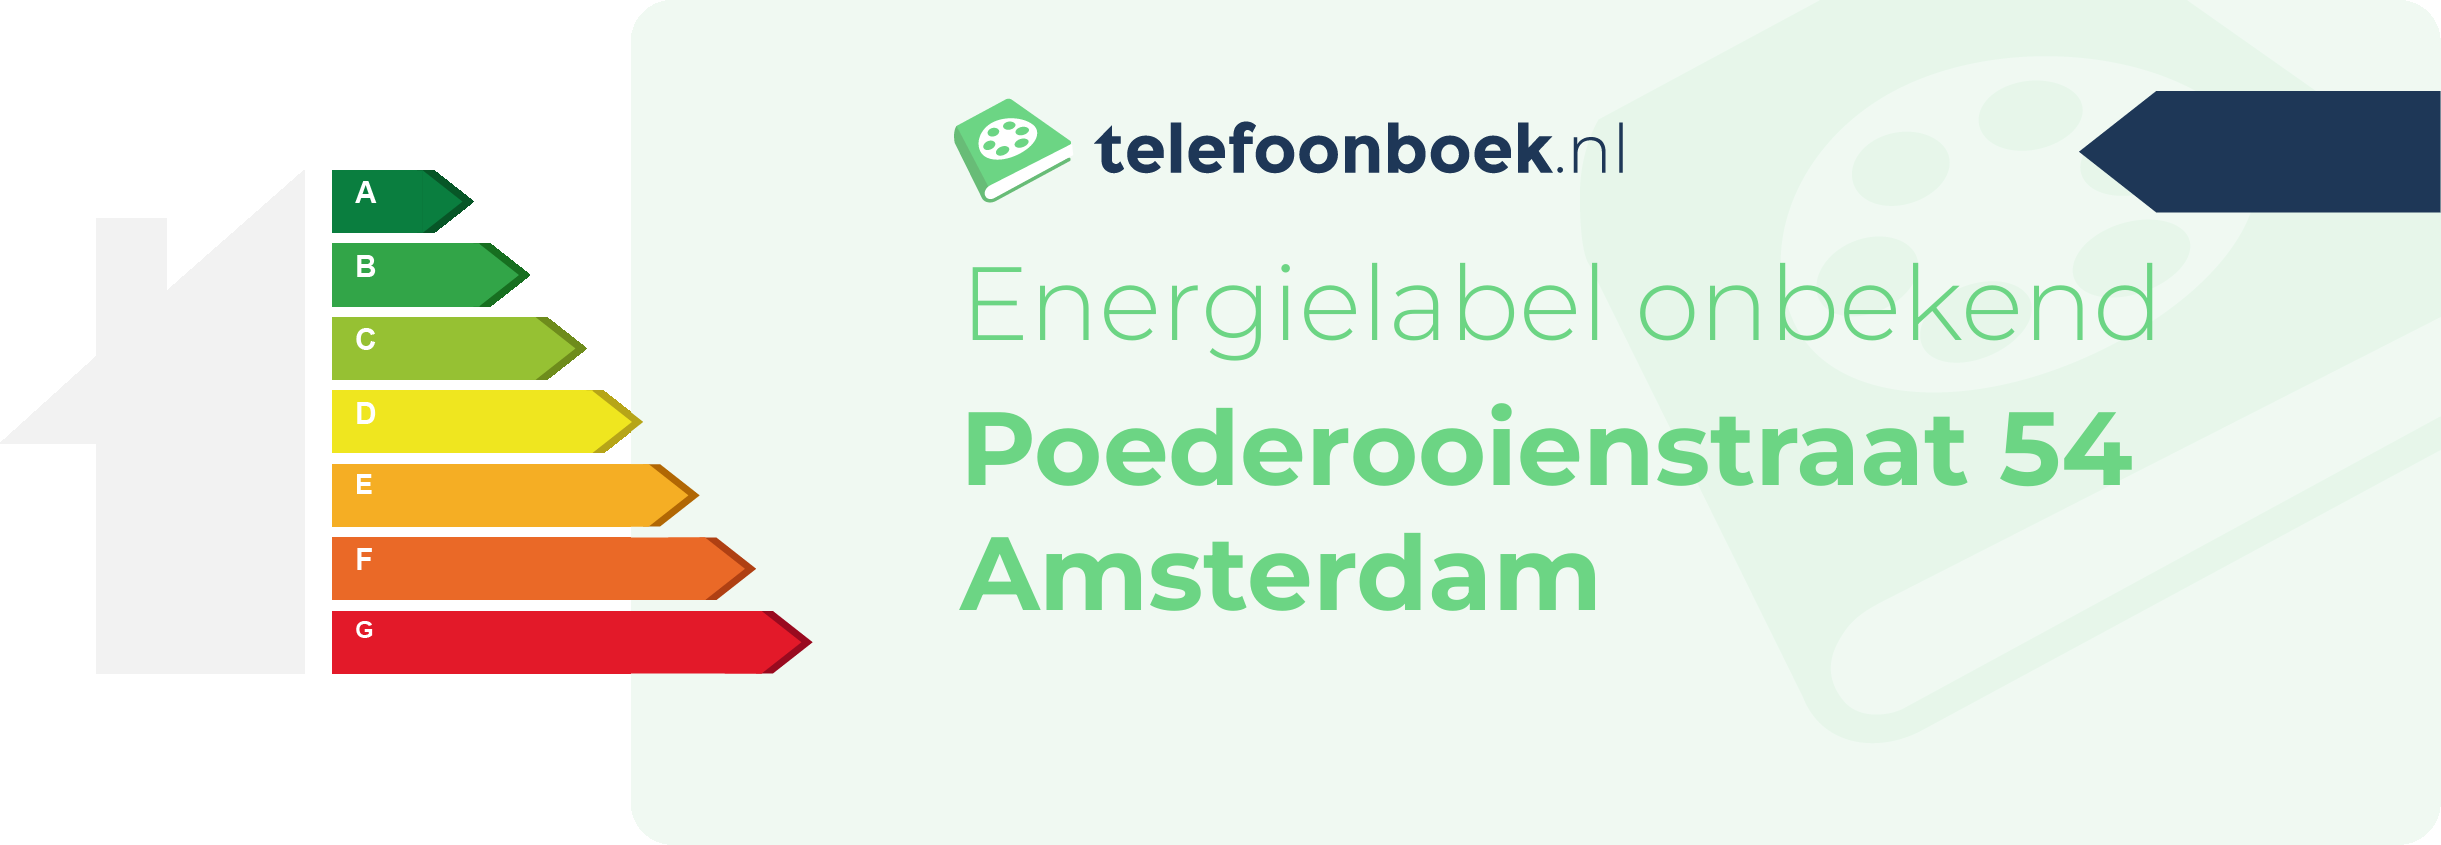 Energielabel Poederooienstraat 54 Amsterdam